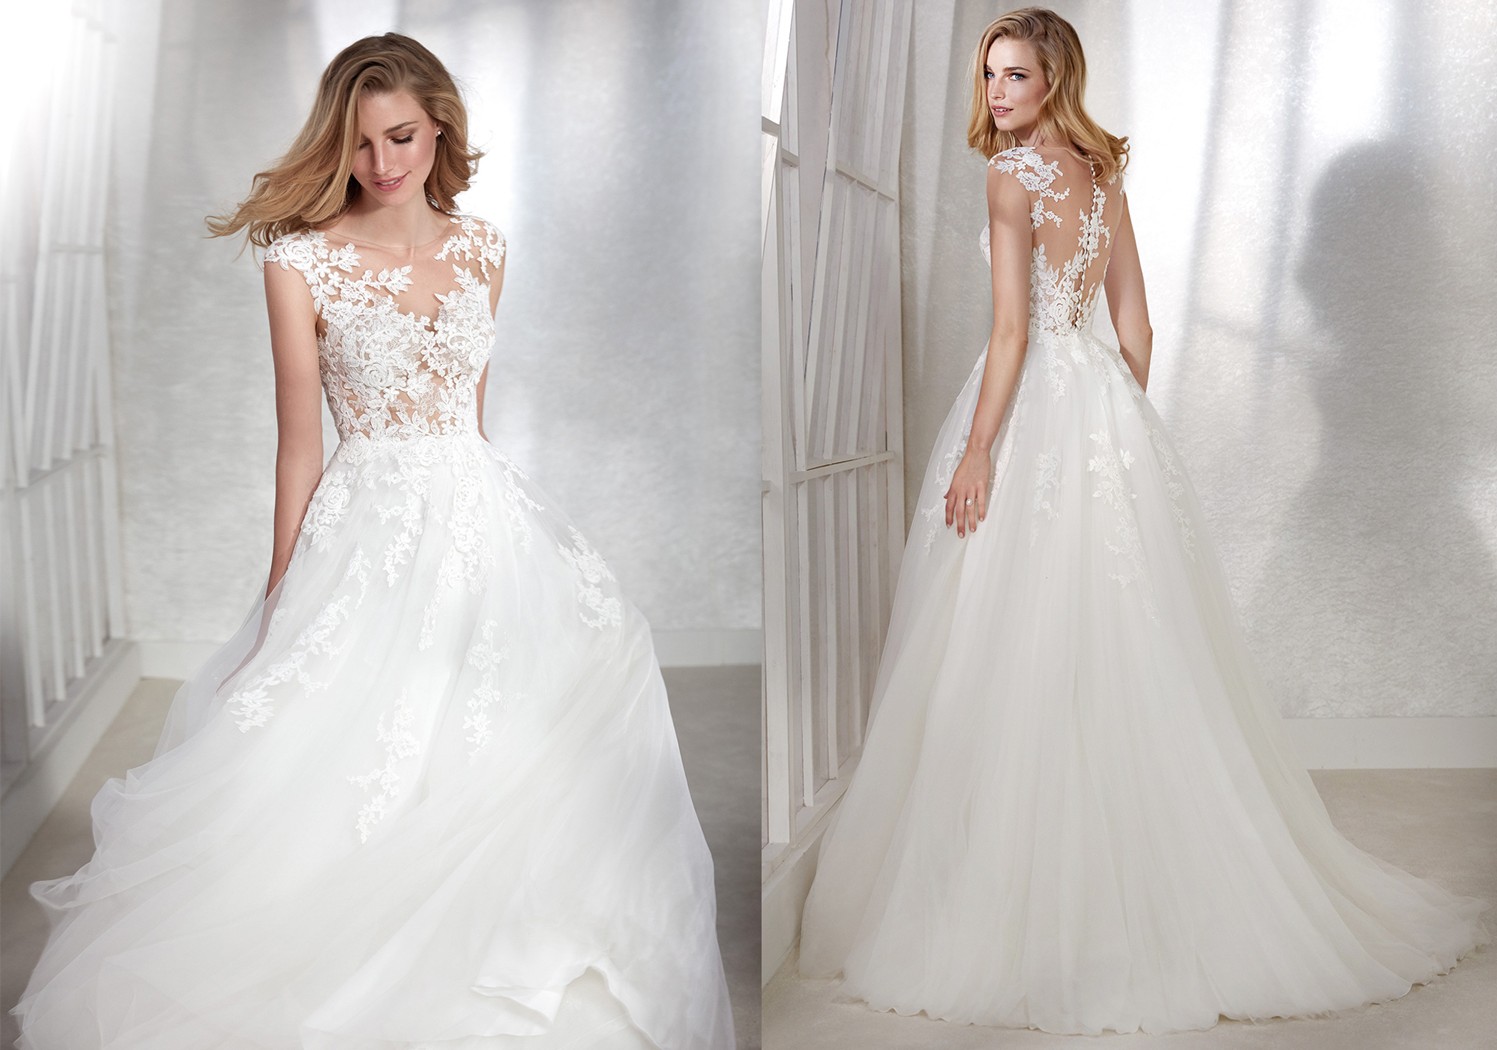 Massakre Charmerende Ordsprog Vælge den perfekte brudekjole - Inspirasjon-kjoler - My Wedding